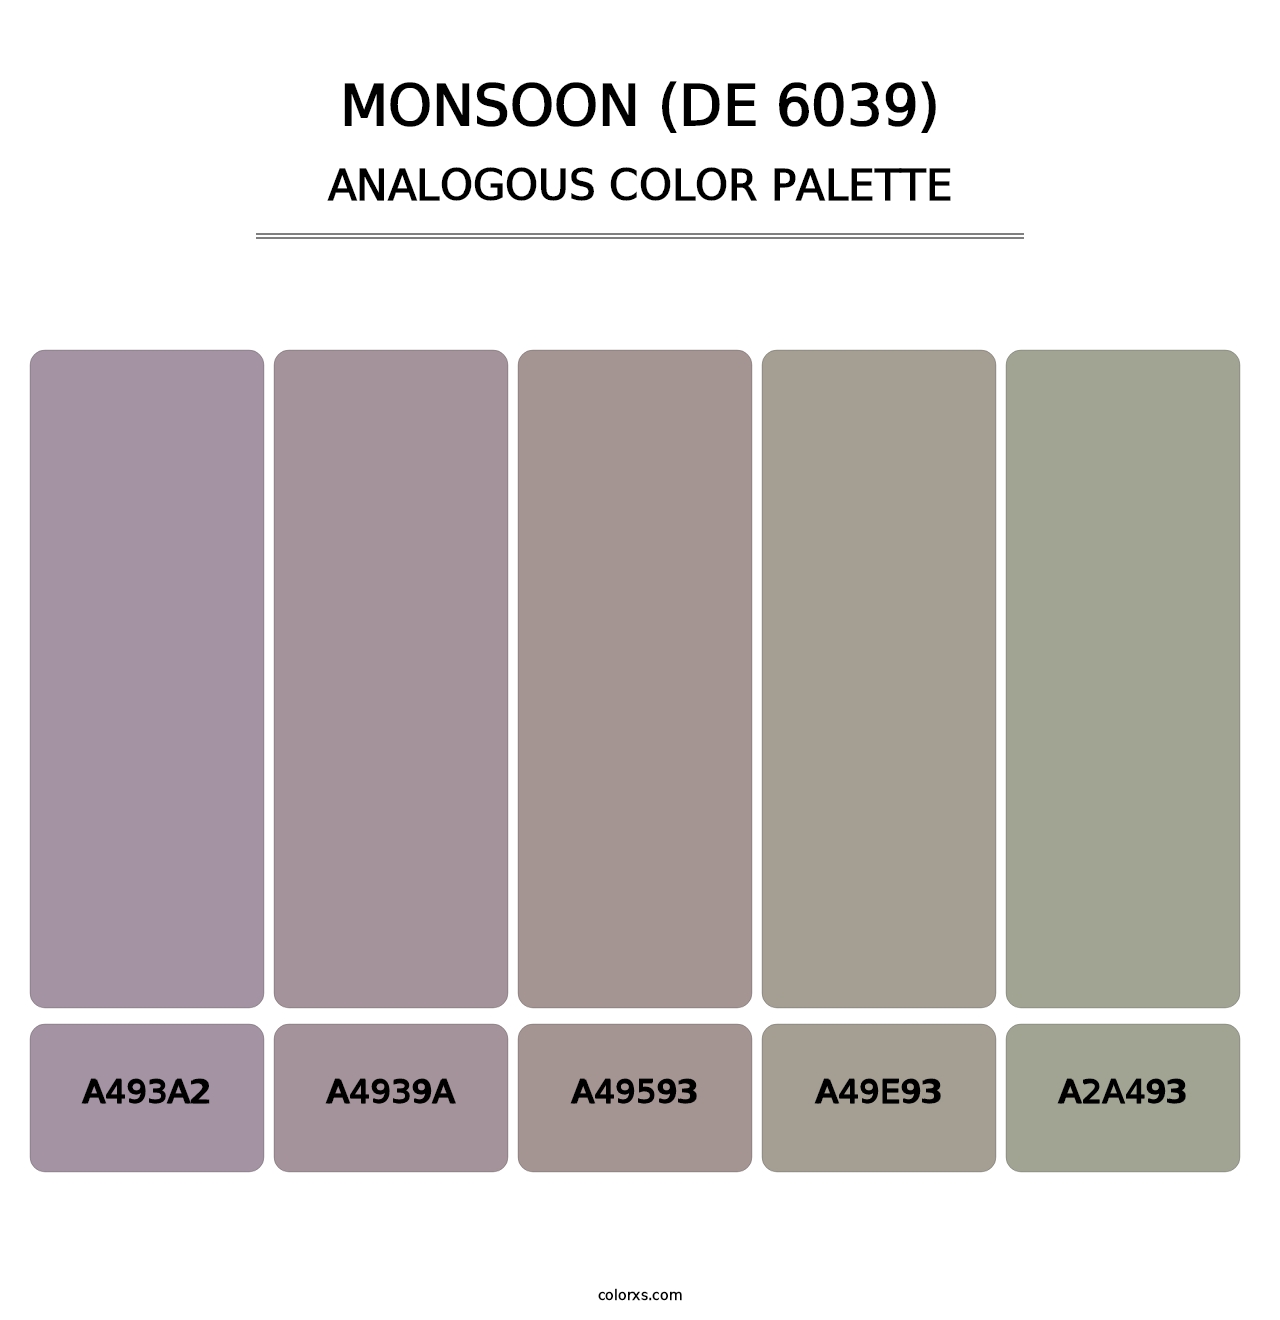 Monsoon (DE 6039) - Analogous Color Palette